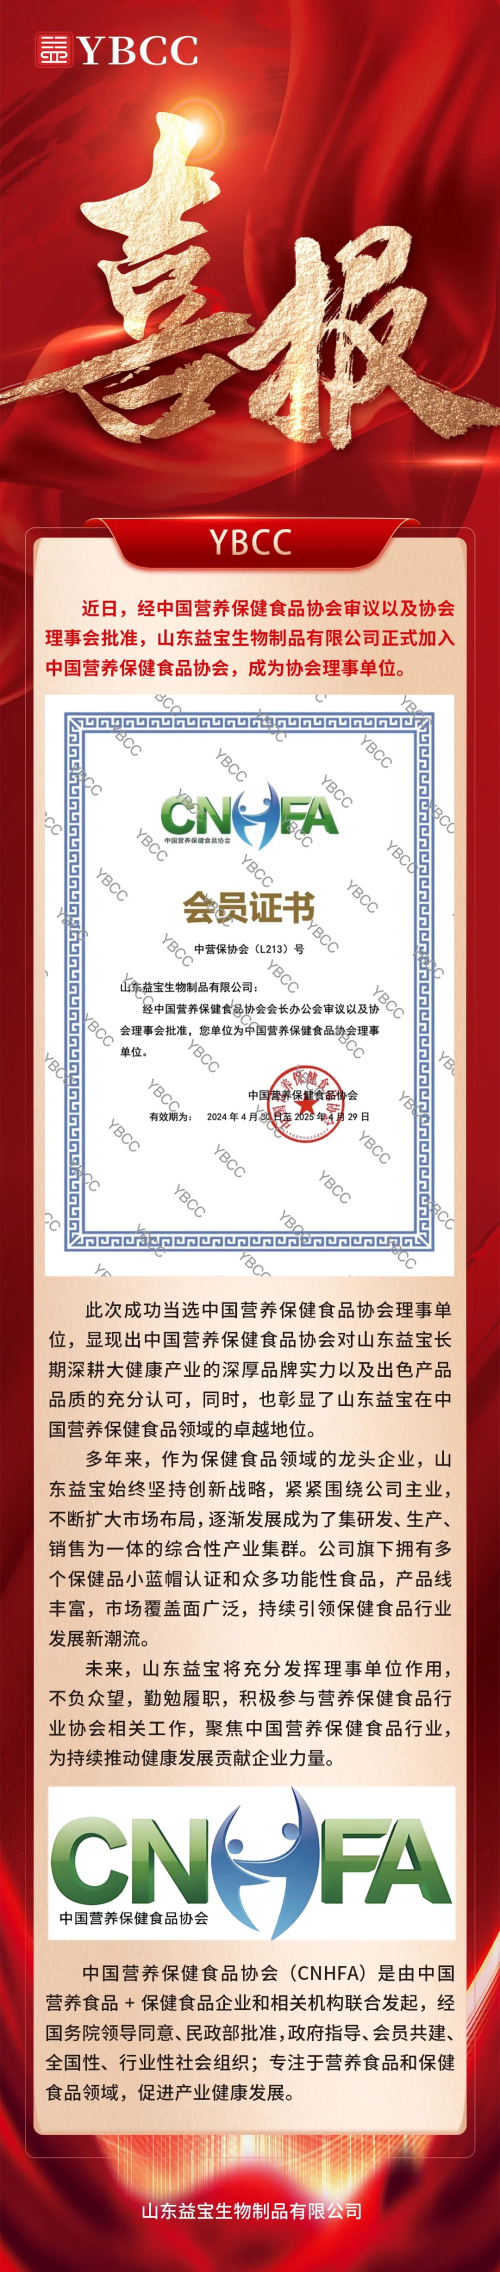 益宝正式成为中国营养保健食品协会理事单位